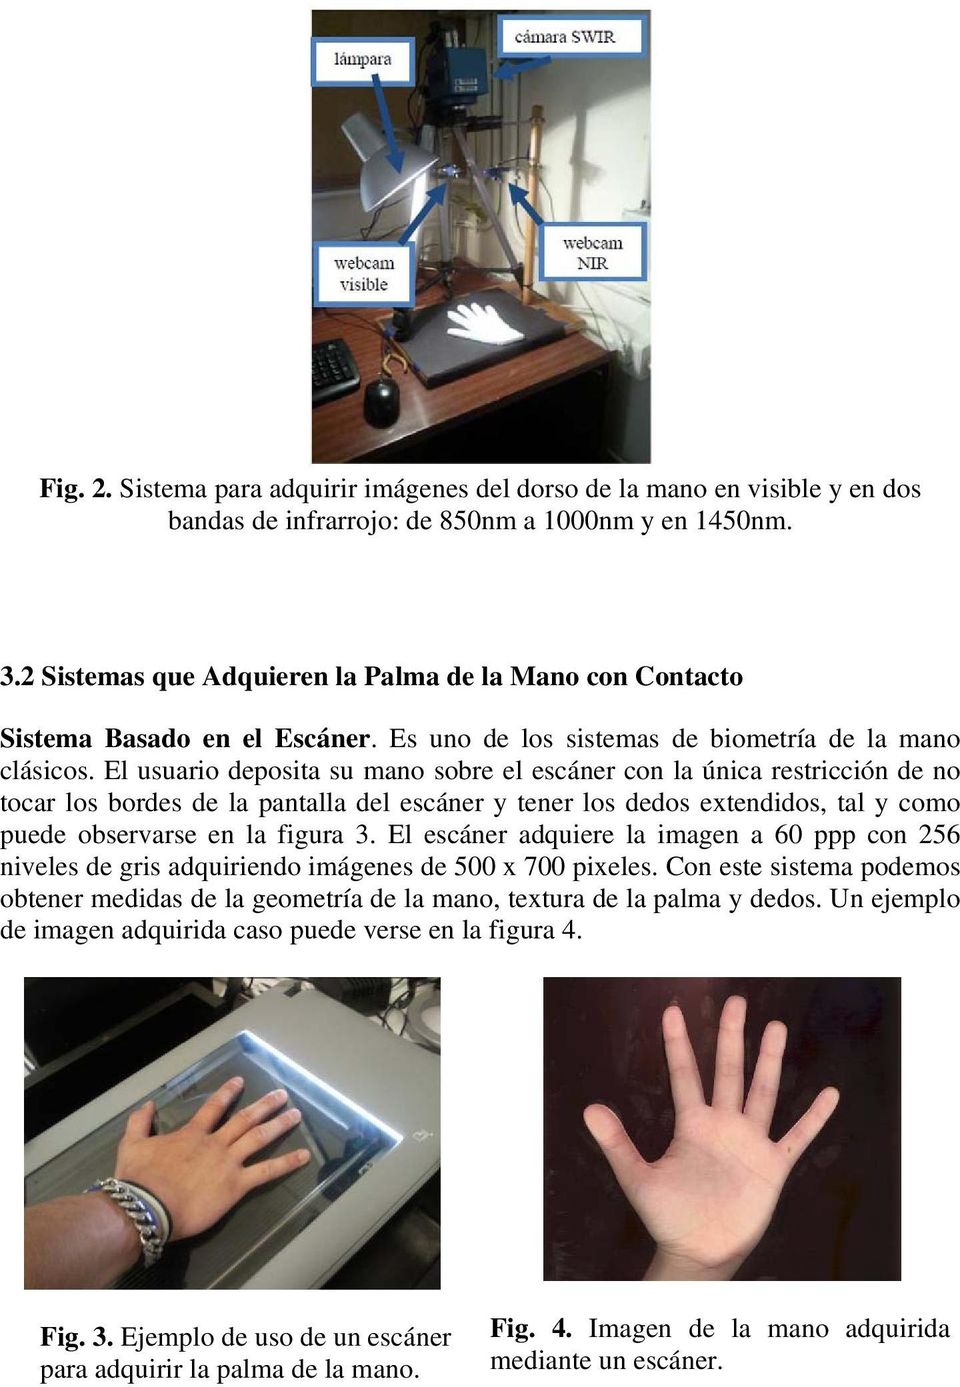 El usuario deposita su mano sobre el escáner con la única restricción de no tocar los bordes de la pantalla del escáner y tener los dedos extendidos, tal y como puede observarse en la figura 3.